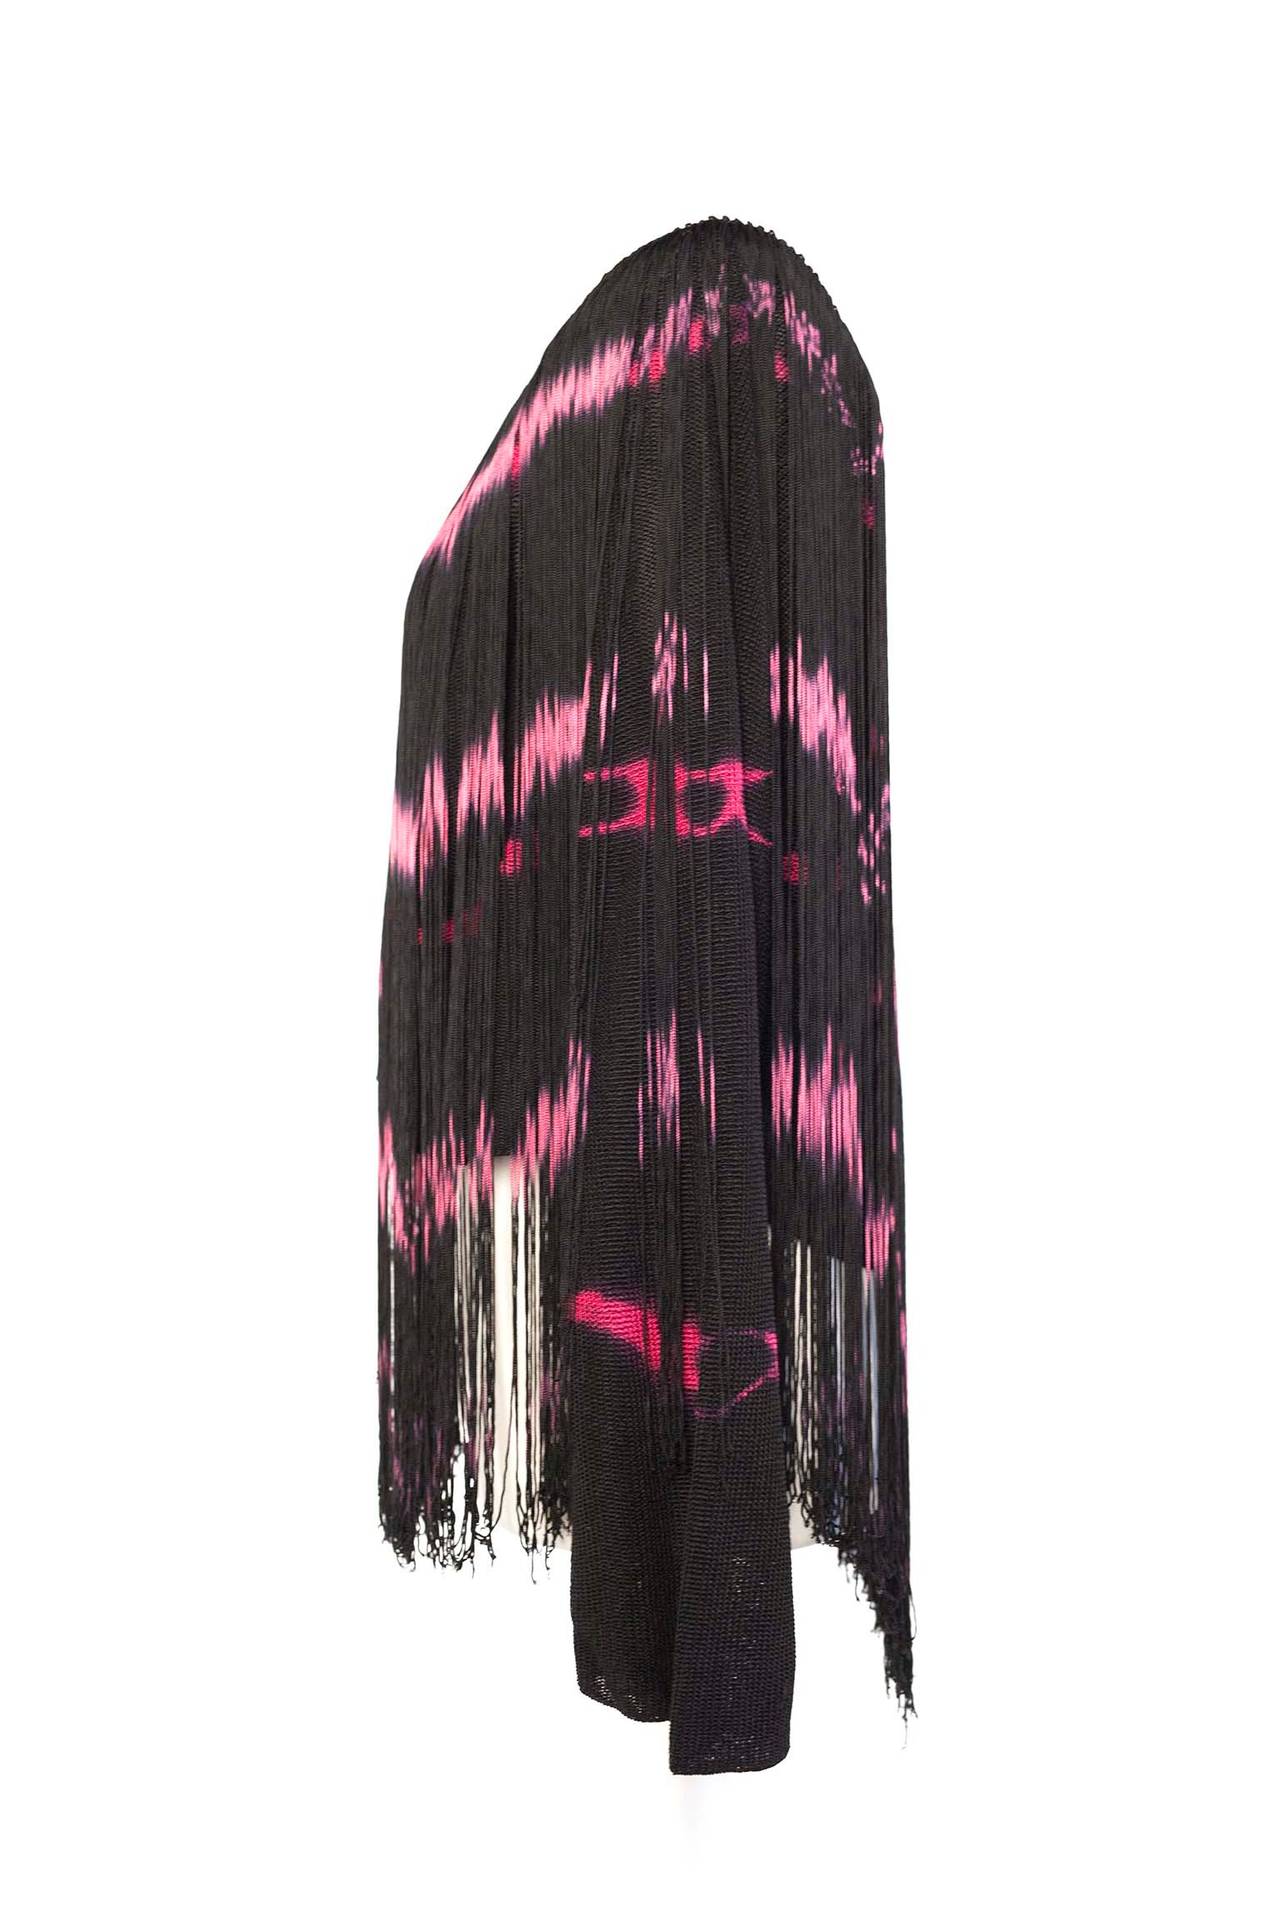 Women's Jean Paul Gaultier vintage tye dye fringed top